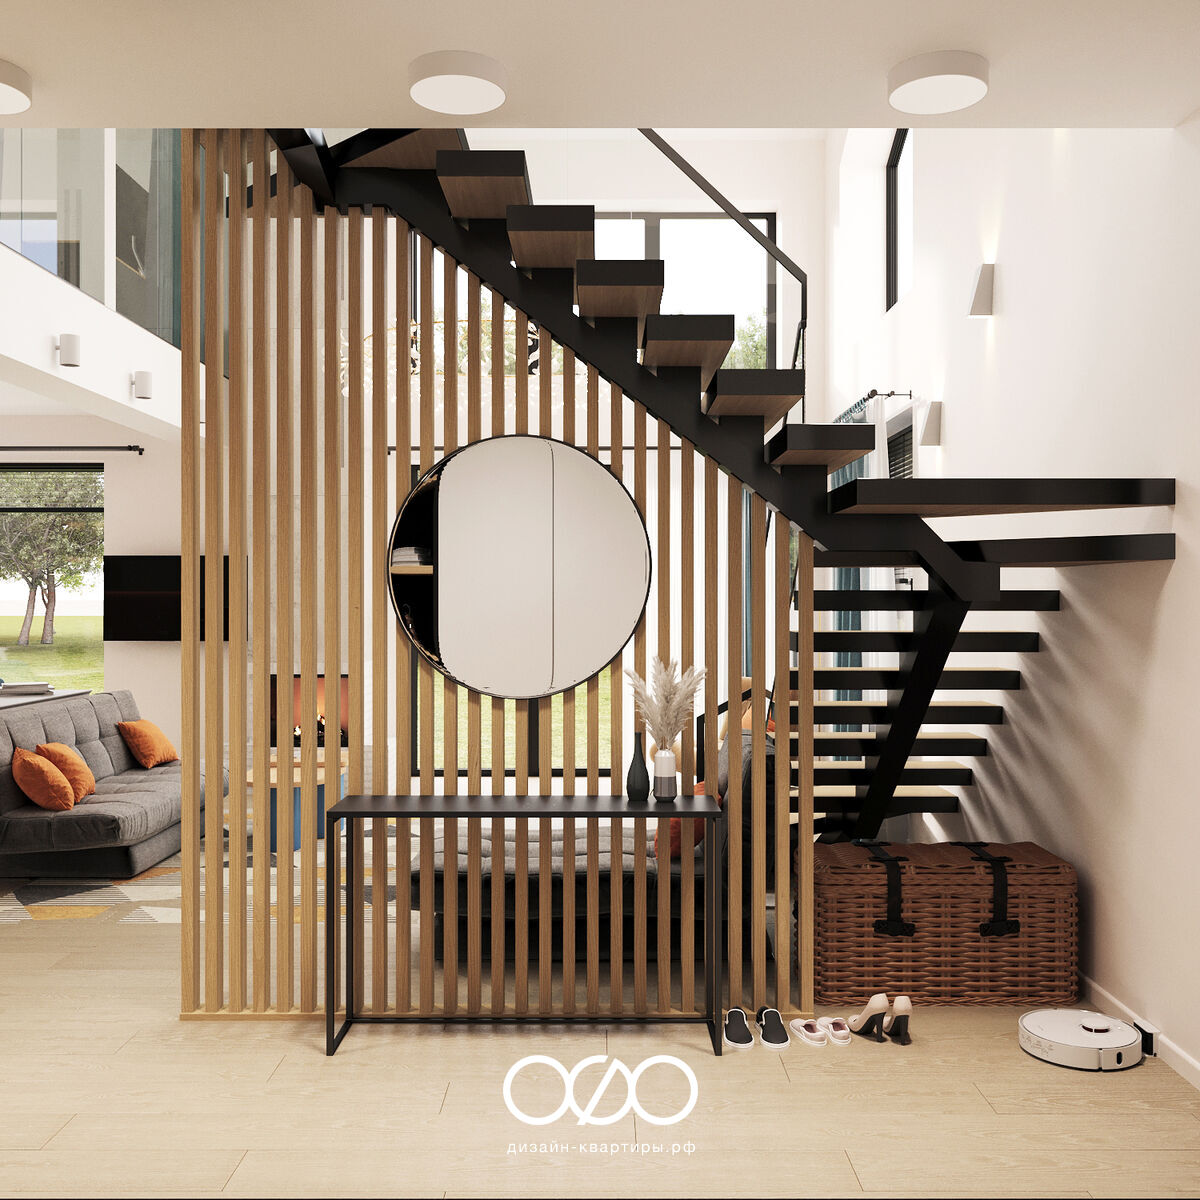 Дизайн-проект 3-комнатного частного дома 136 м2 в современном стиле, г. Сочи.